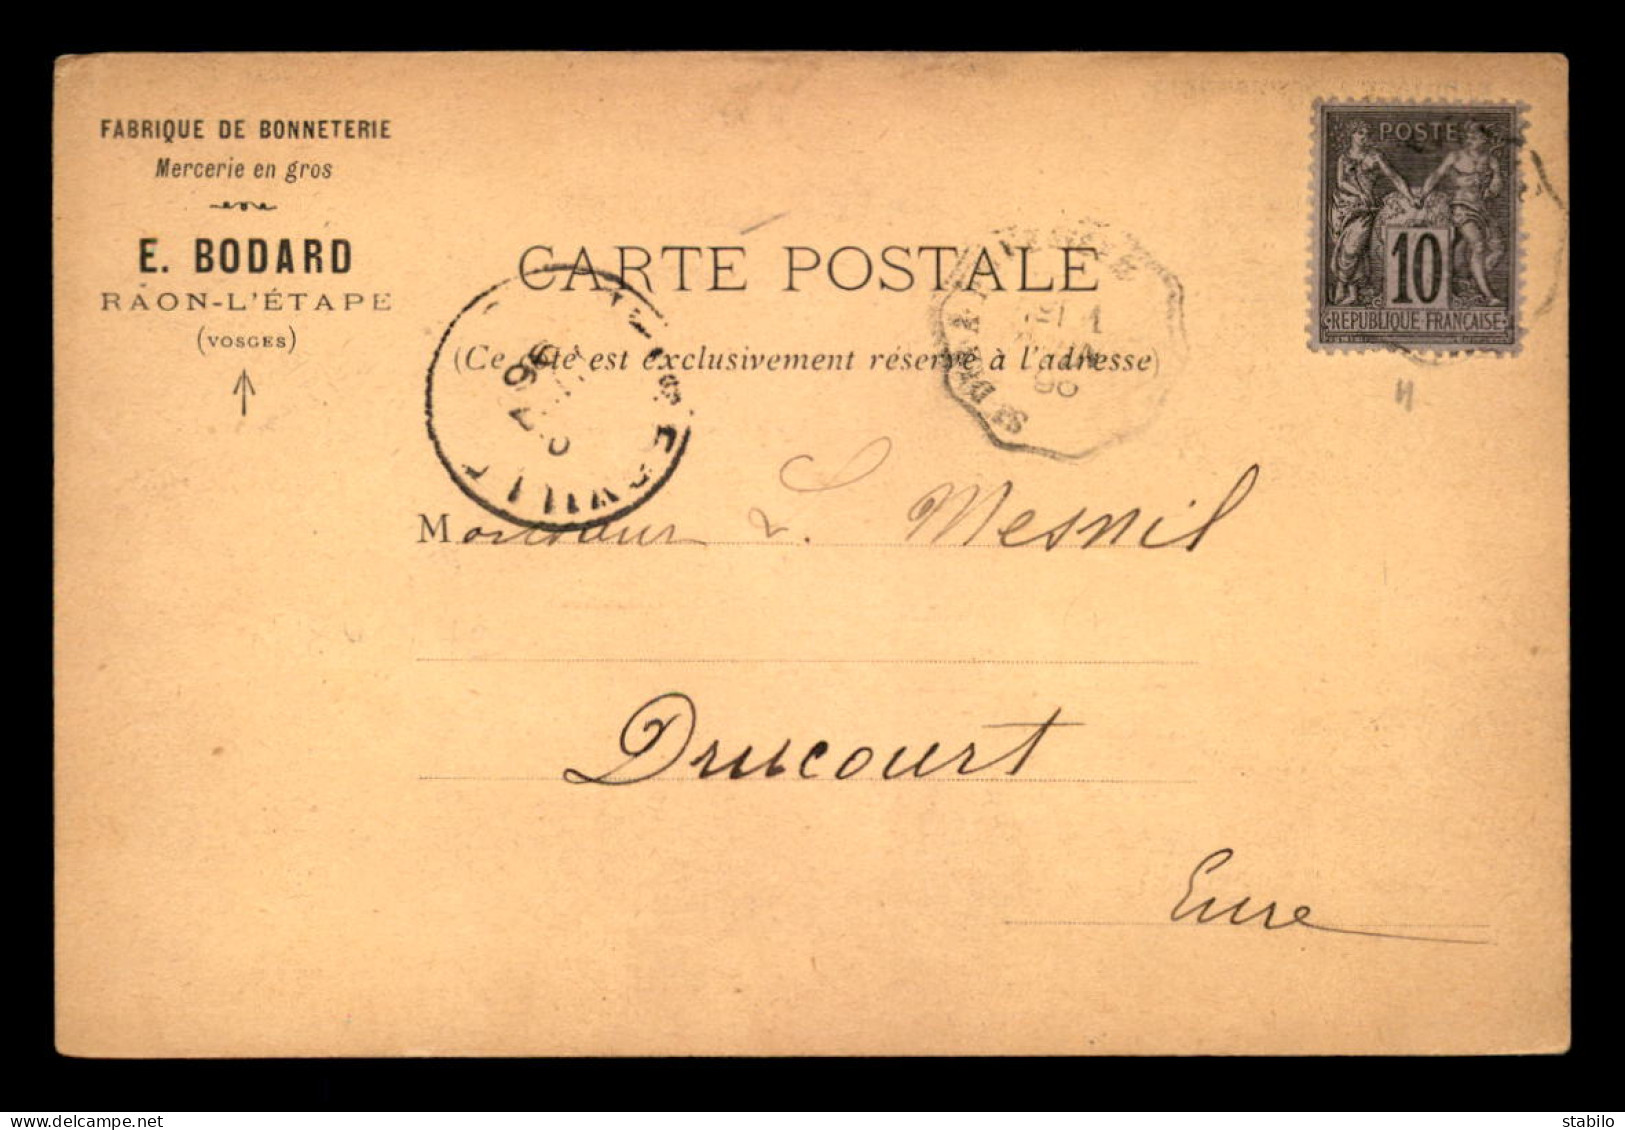 88 - RAON-L'ETAPE - CARTE DE SERVICE - FABRIQUE DE BONNETERIE E. BODARD - DATEE DU 31 MAI 1896 - Raon L'Etape